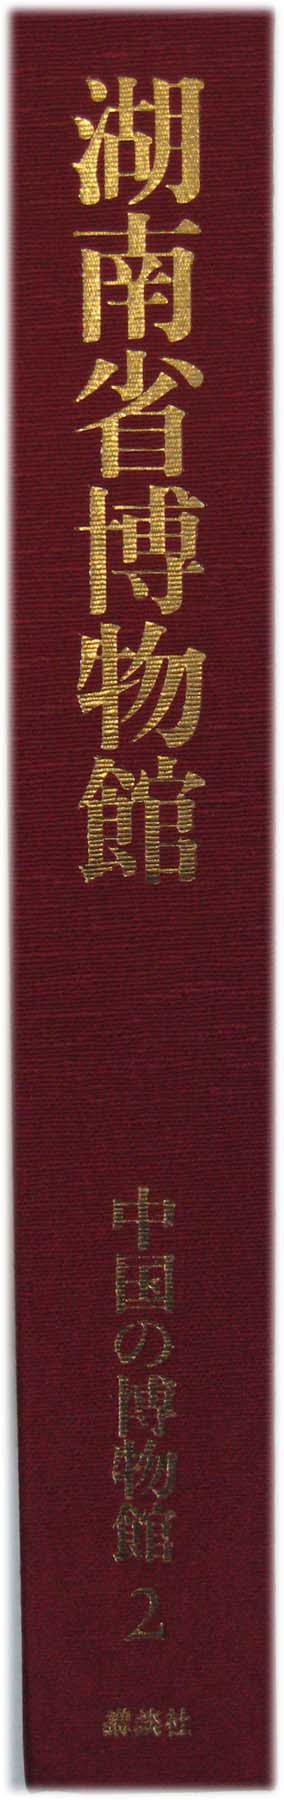 期間限定で特別価格 中国書蹟大観 講談社 中国書道 上海博物館 上巻 